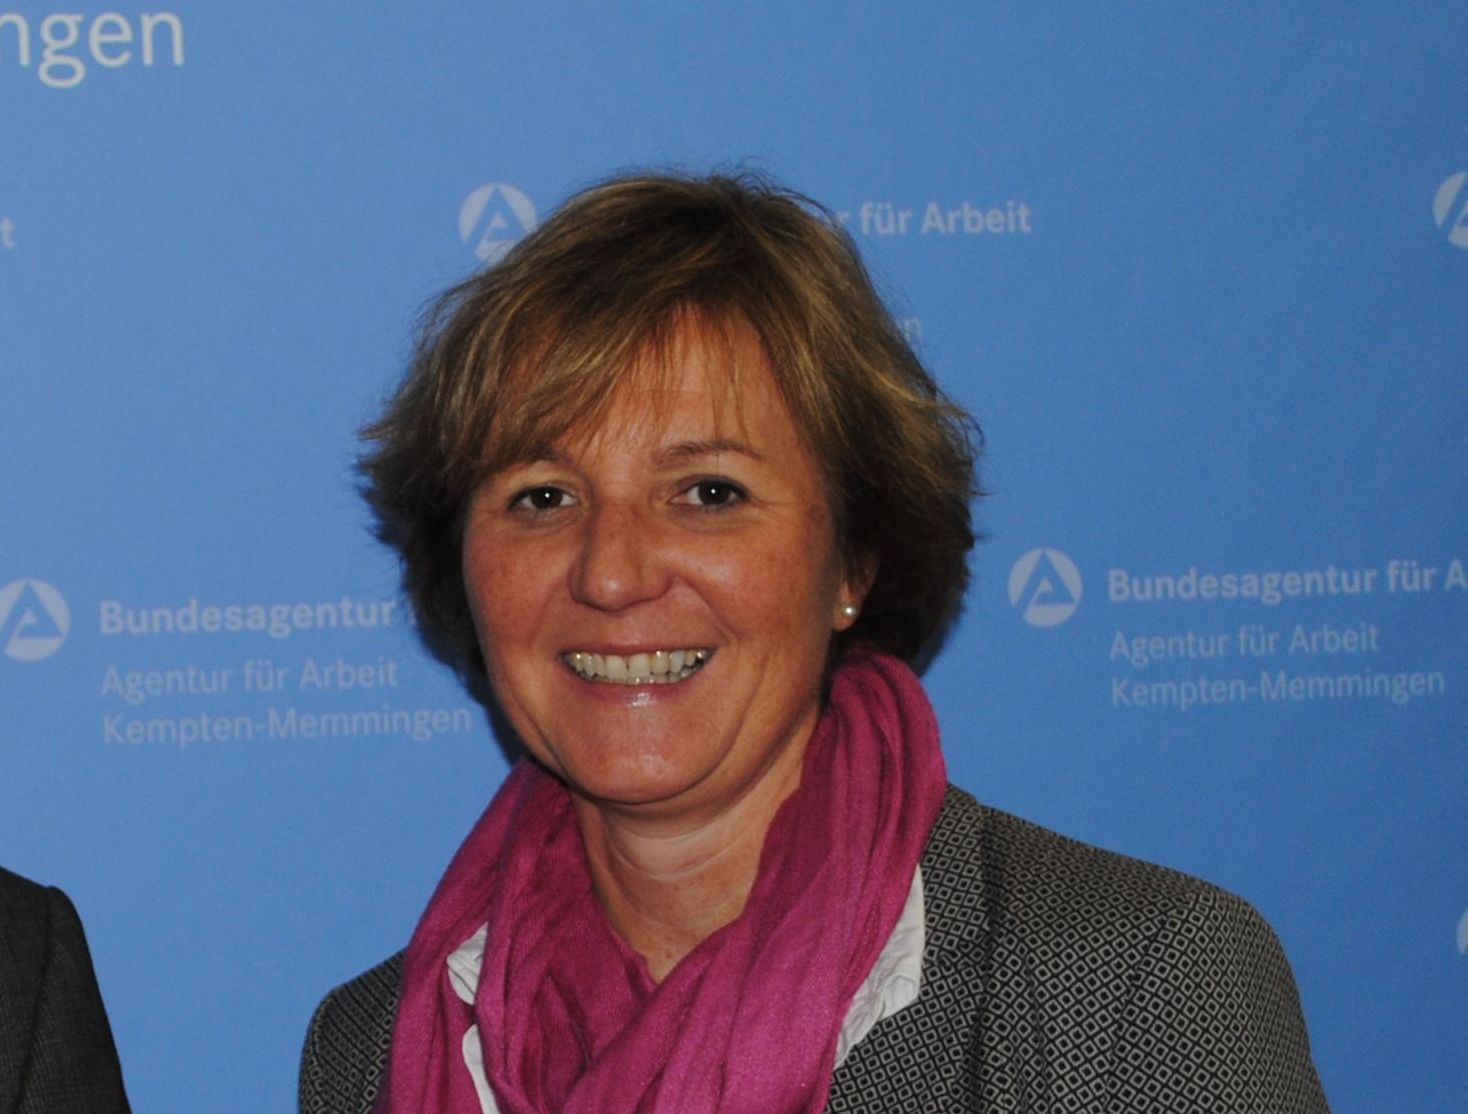 Archivbild. Maria Amtmann, Leiterin der Agentur für Arbeit Kempten-Memmingen. Foto: Agentur für Arbeit Kempten-Memmingen